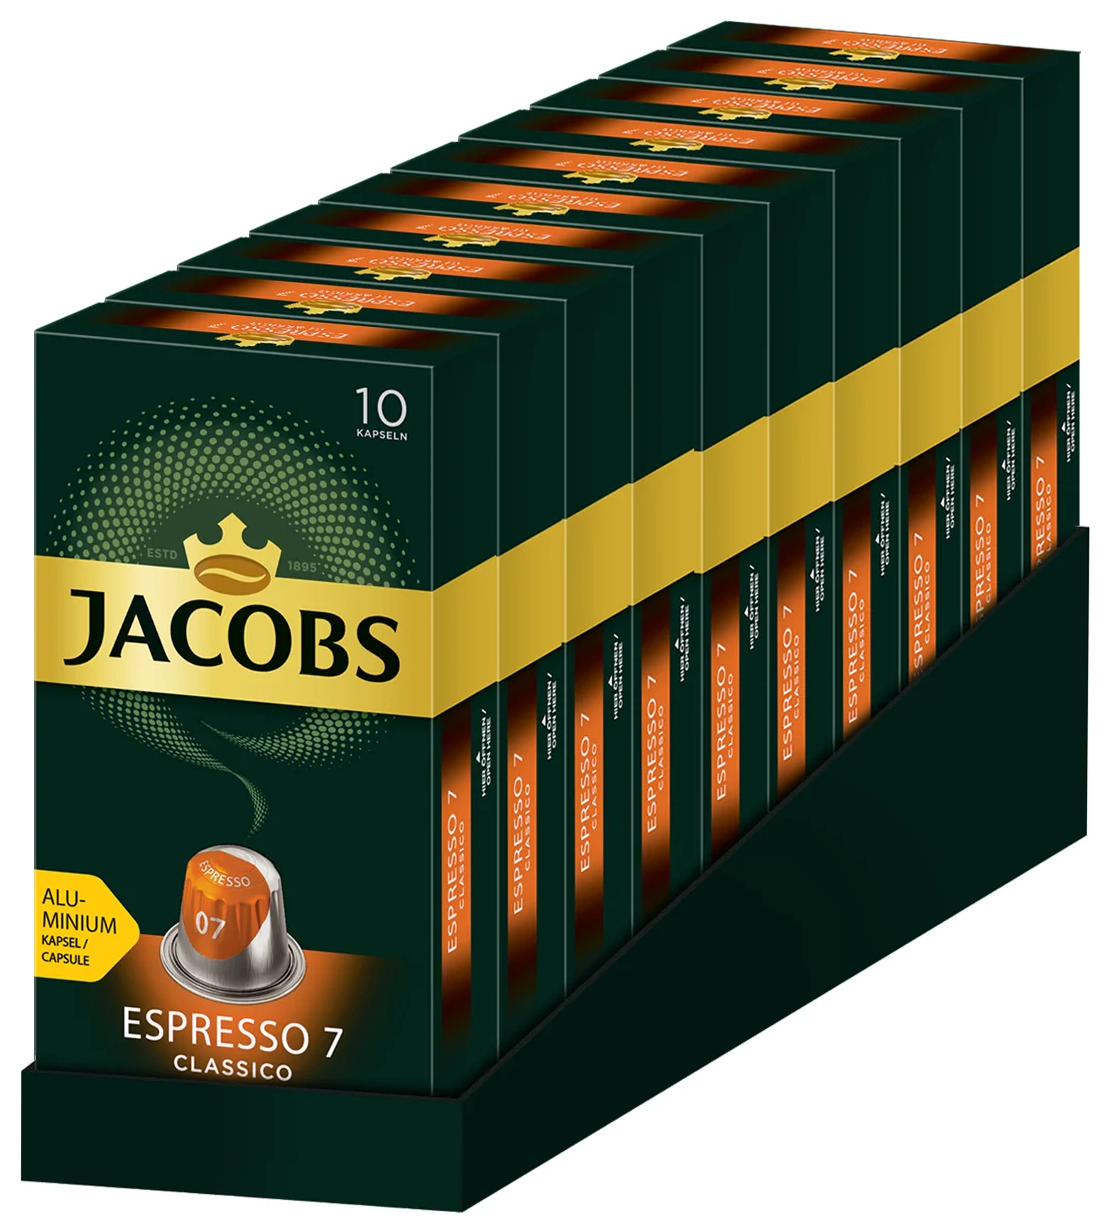 Спайка Набор Кофе в алюминиевых капсулах Jacobs Espresso #7 Classico, 10 упаковок по 10 капсул(100 капсул) - фотография № 4